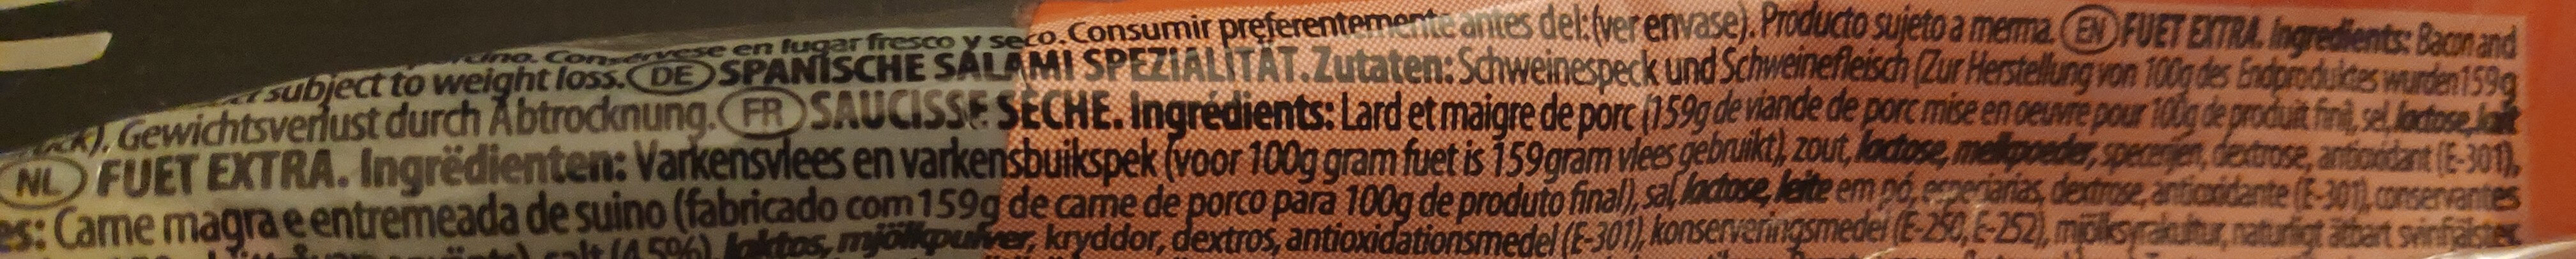 Argal Fuet Tradición - Ingredients - nl